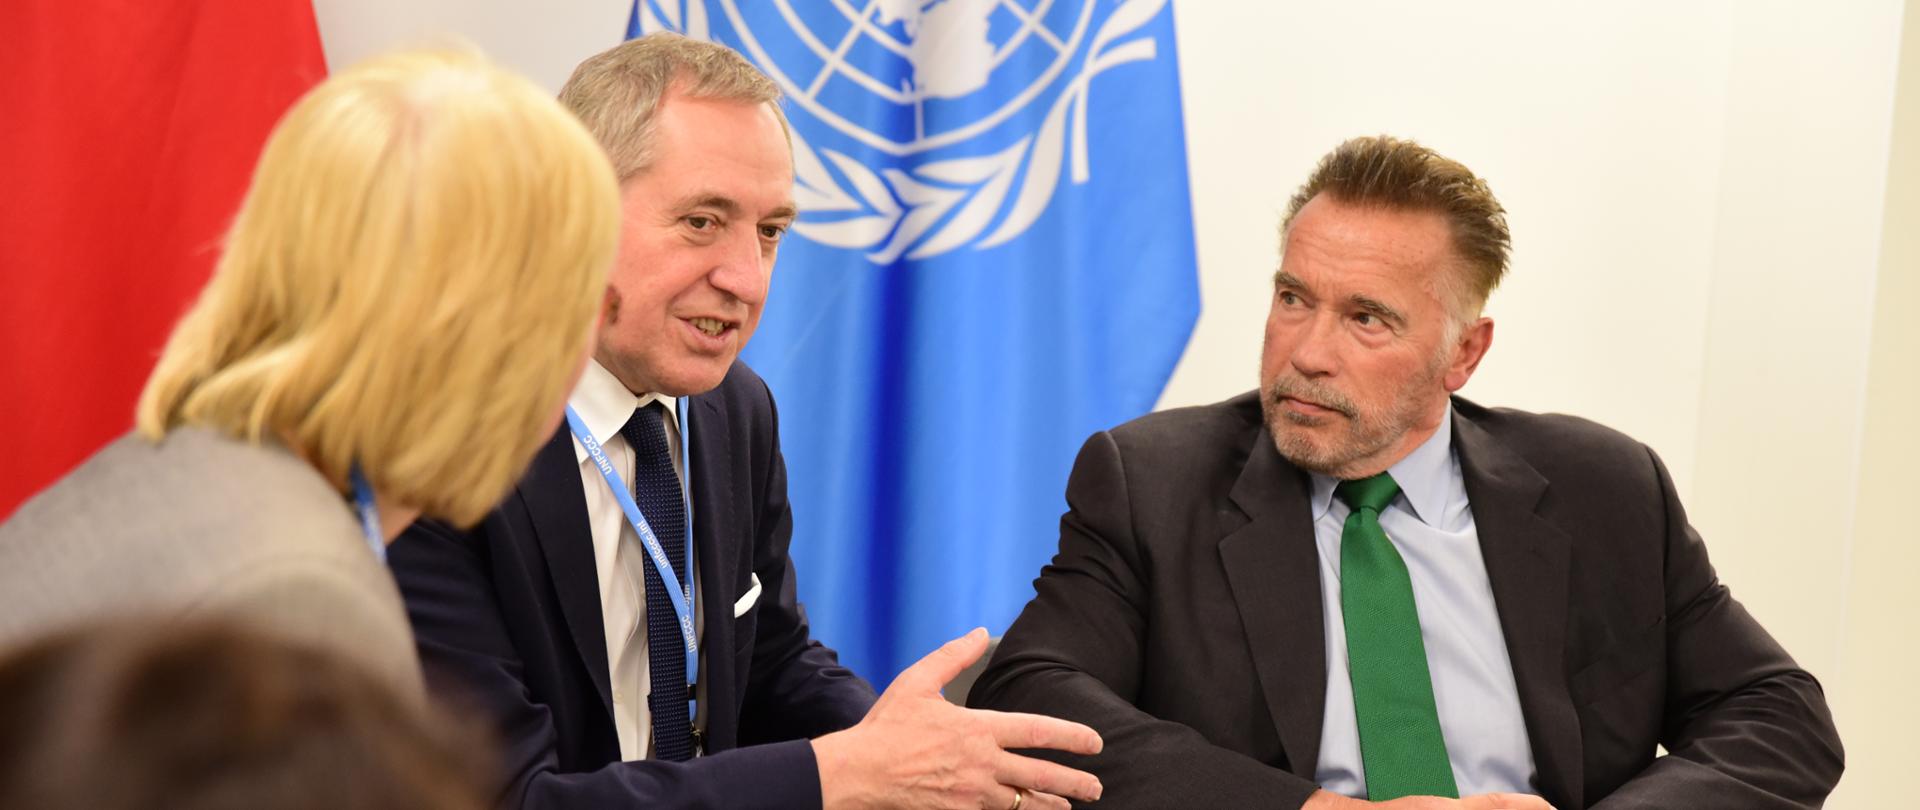 Minister środowiska Henryk Kowalczyk i senator Arnold Schwarzenegger - spotkanie bilateralne